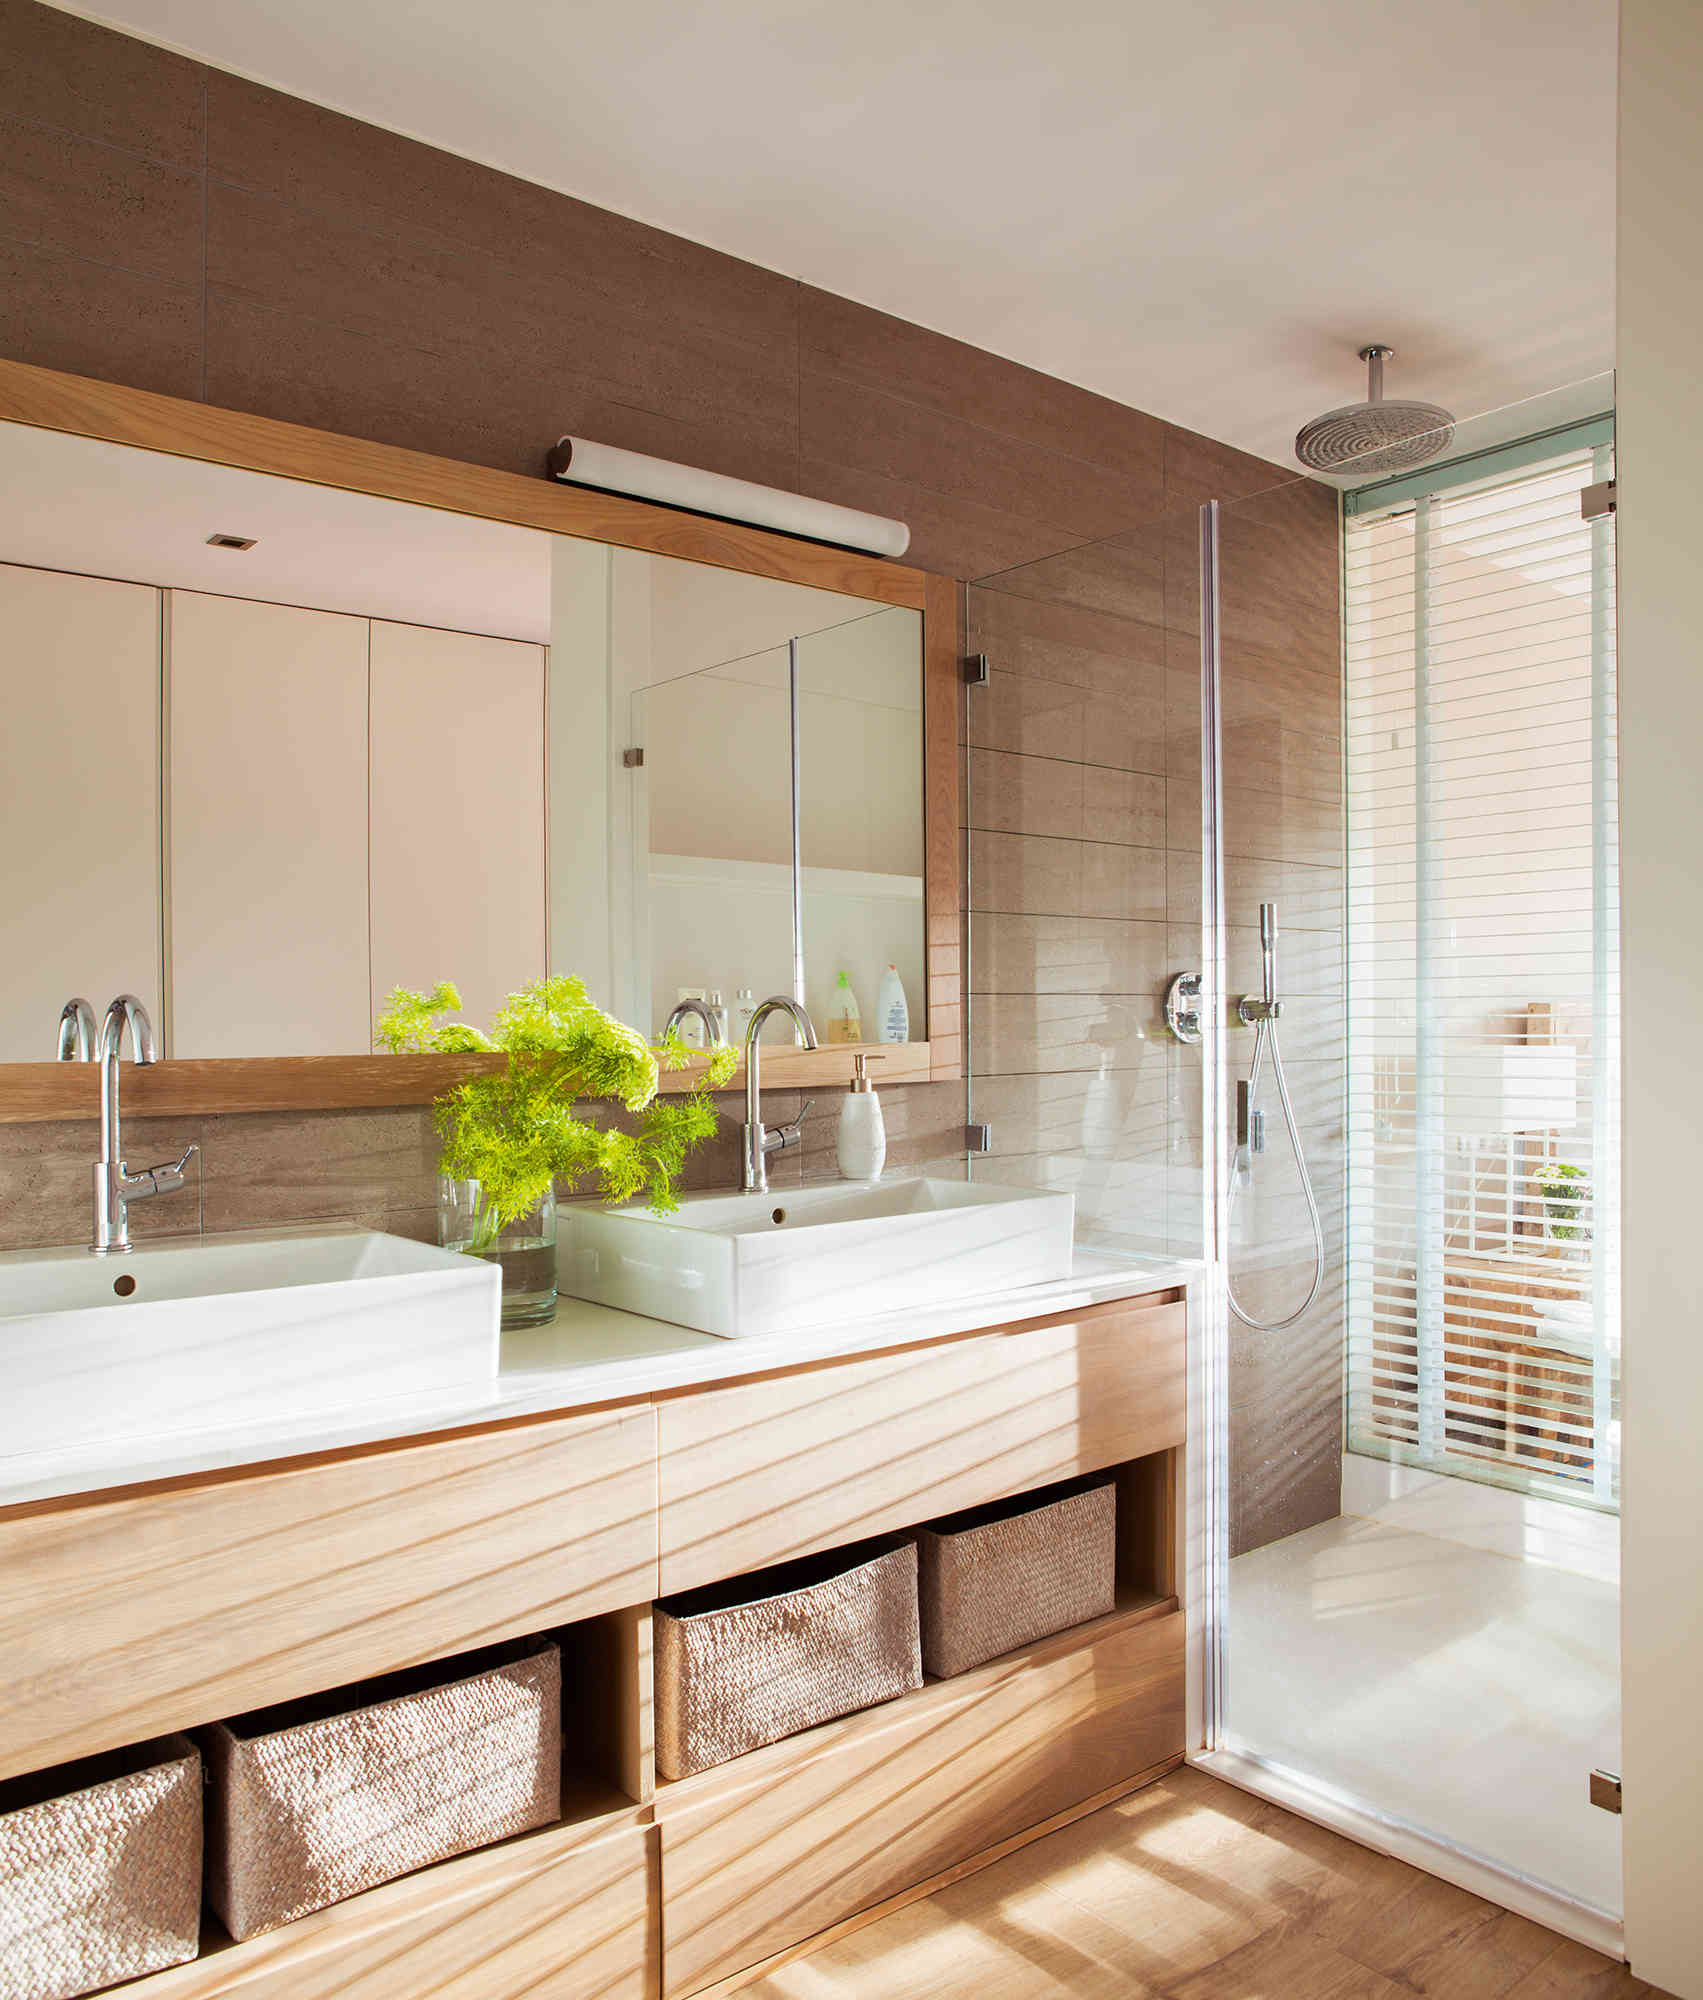 2 bano moderno con ducha que comunica con el dormitorio fontaneros madrid reparaciones urgentes madrid